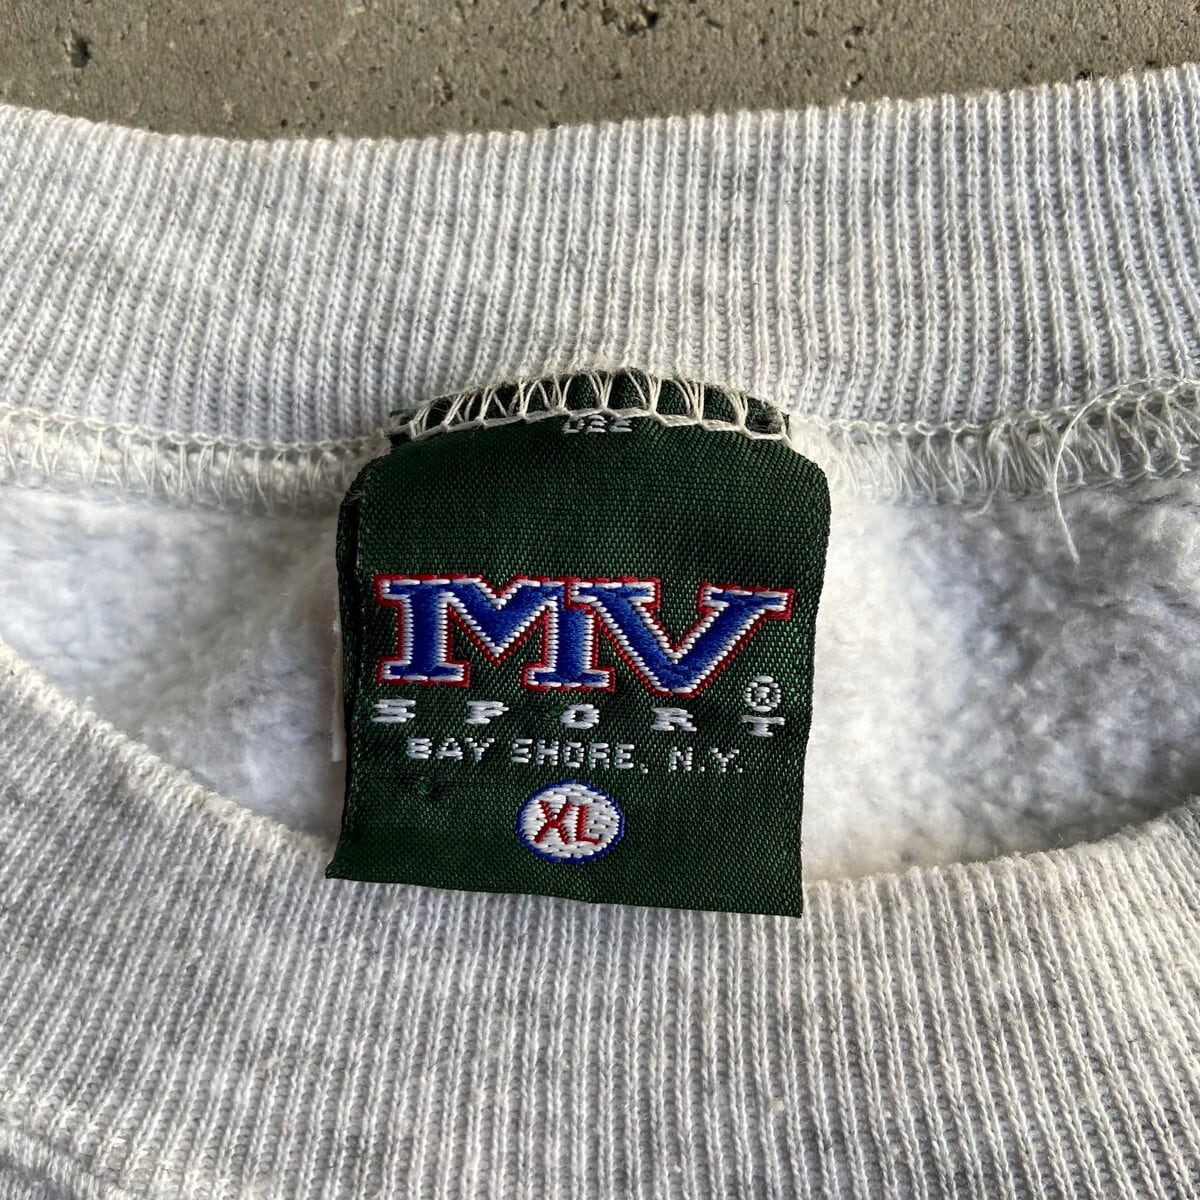 90年代 MV SPORT カレッジTシャツ USA製 メンズL ヴィンテージ /eaa244397